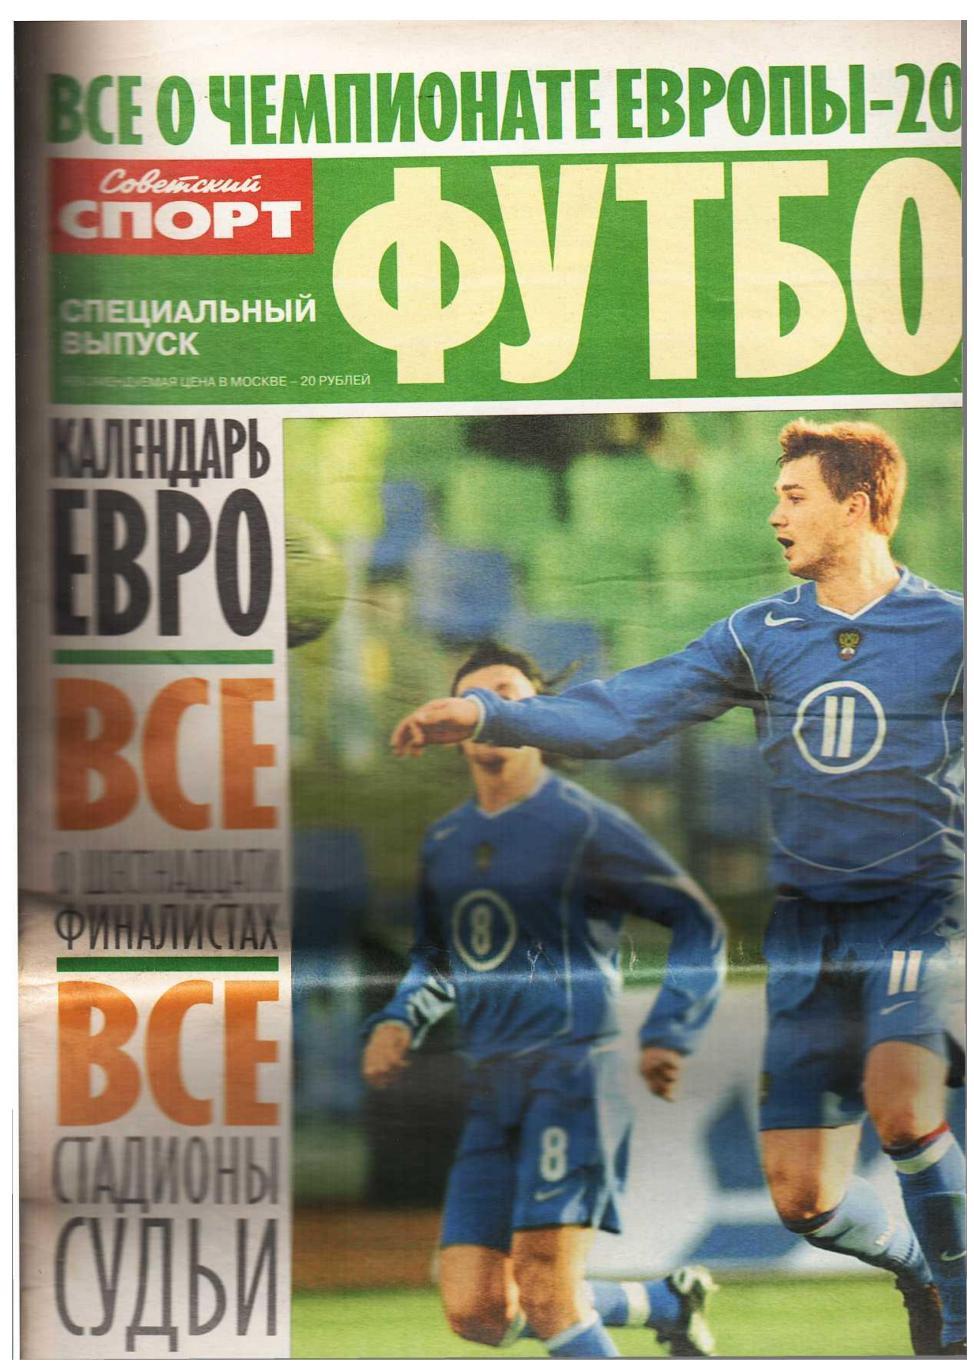 Футбол. Всё о чемпионате Европы – 2004.Приложение к газете «Советский спорт».